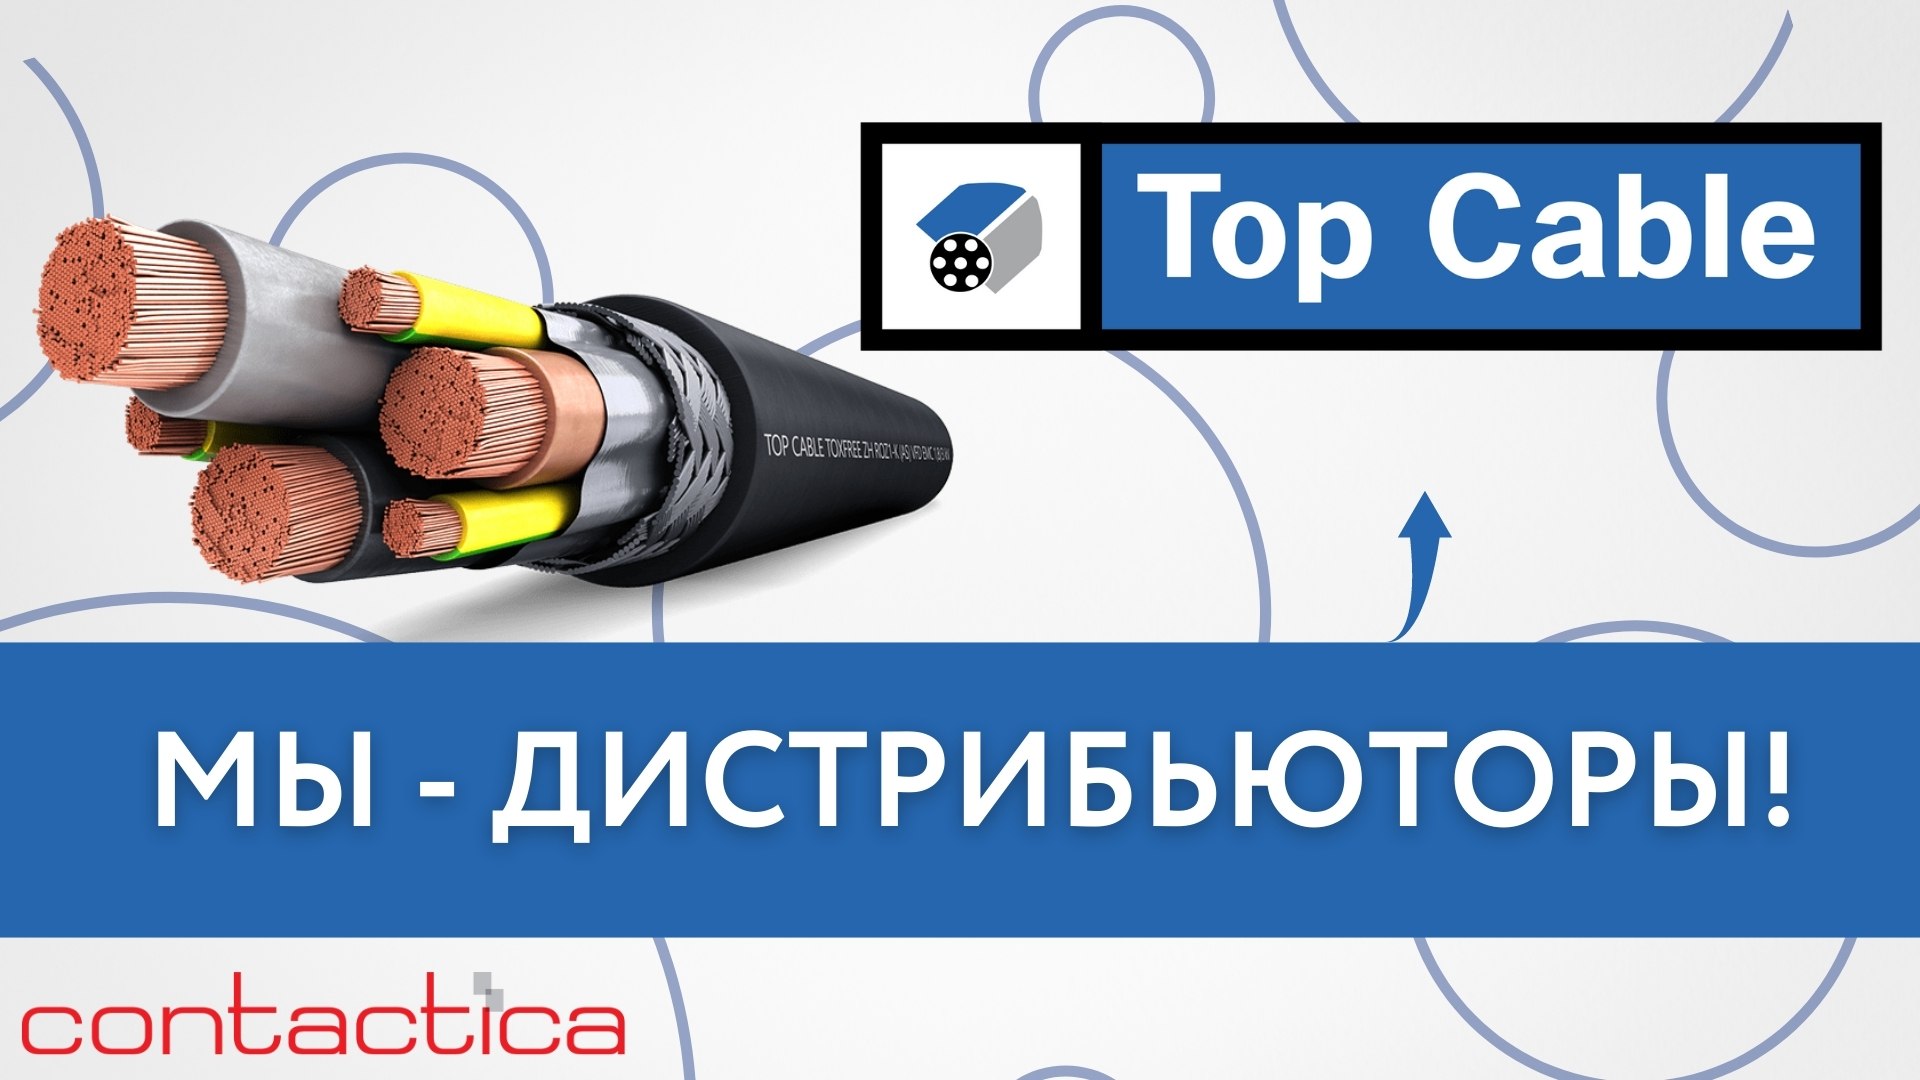 ✔CONTACTICA является официальным дистрибьютором Top Cable в России